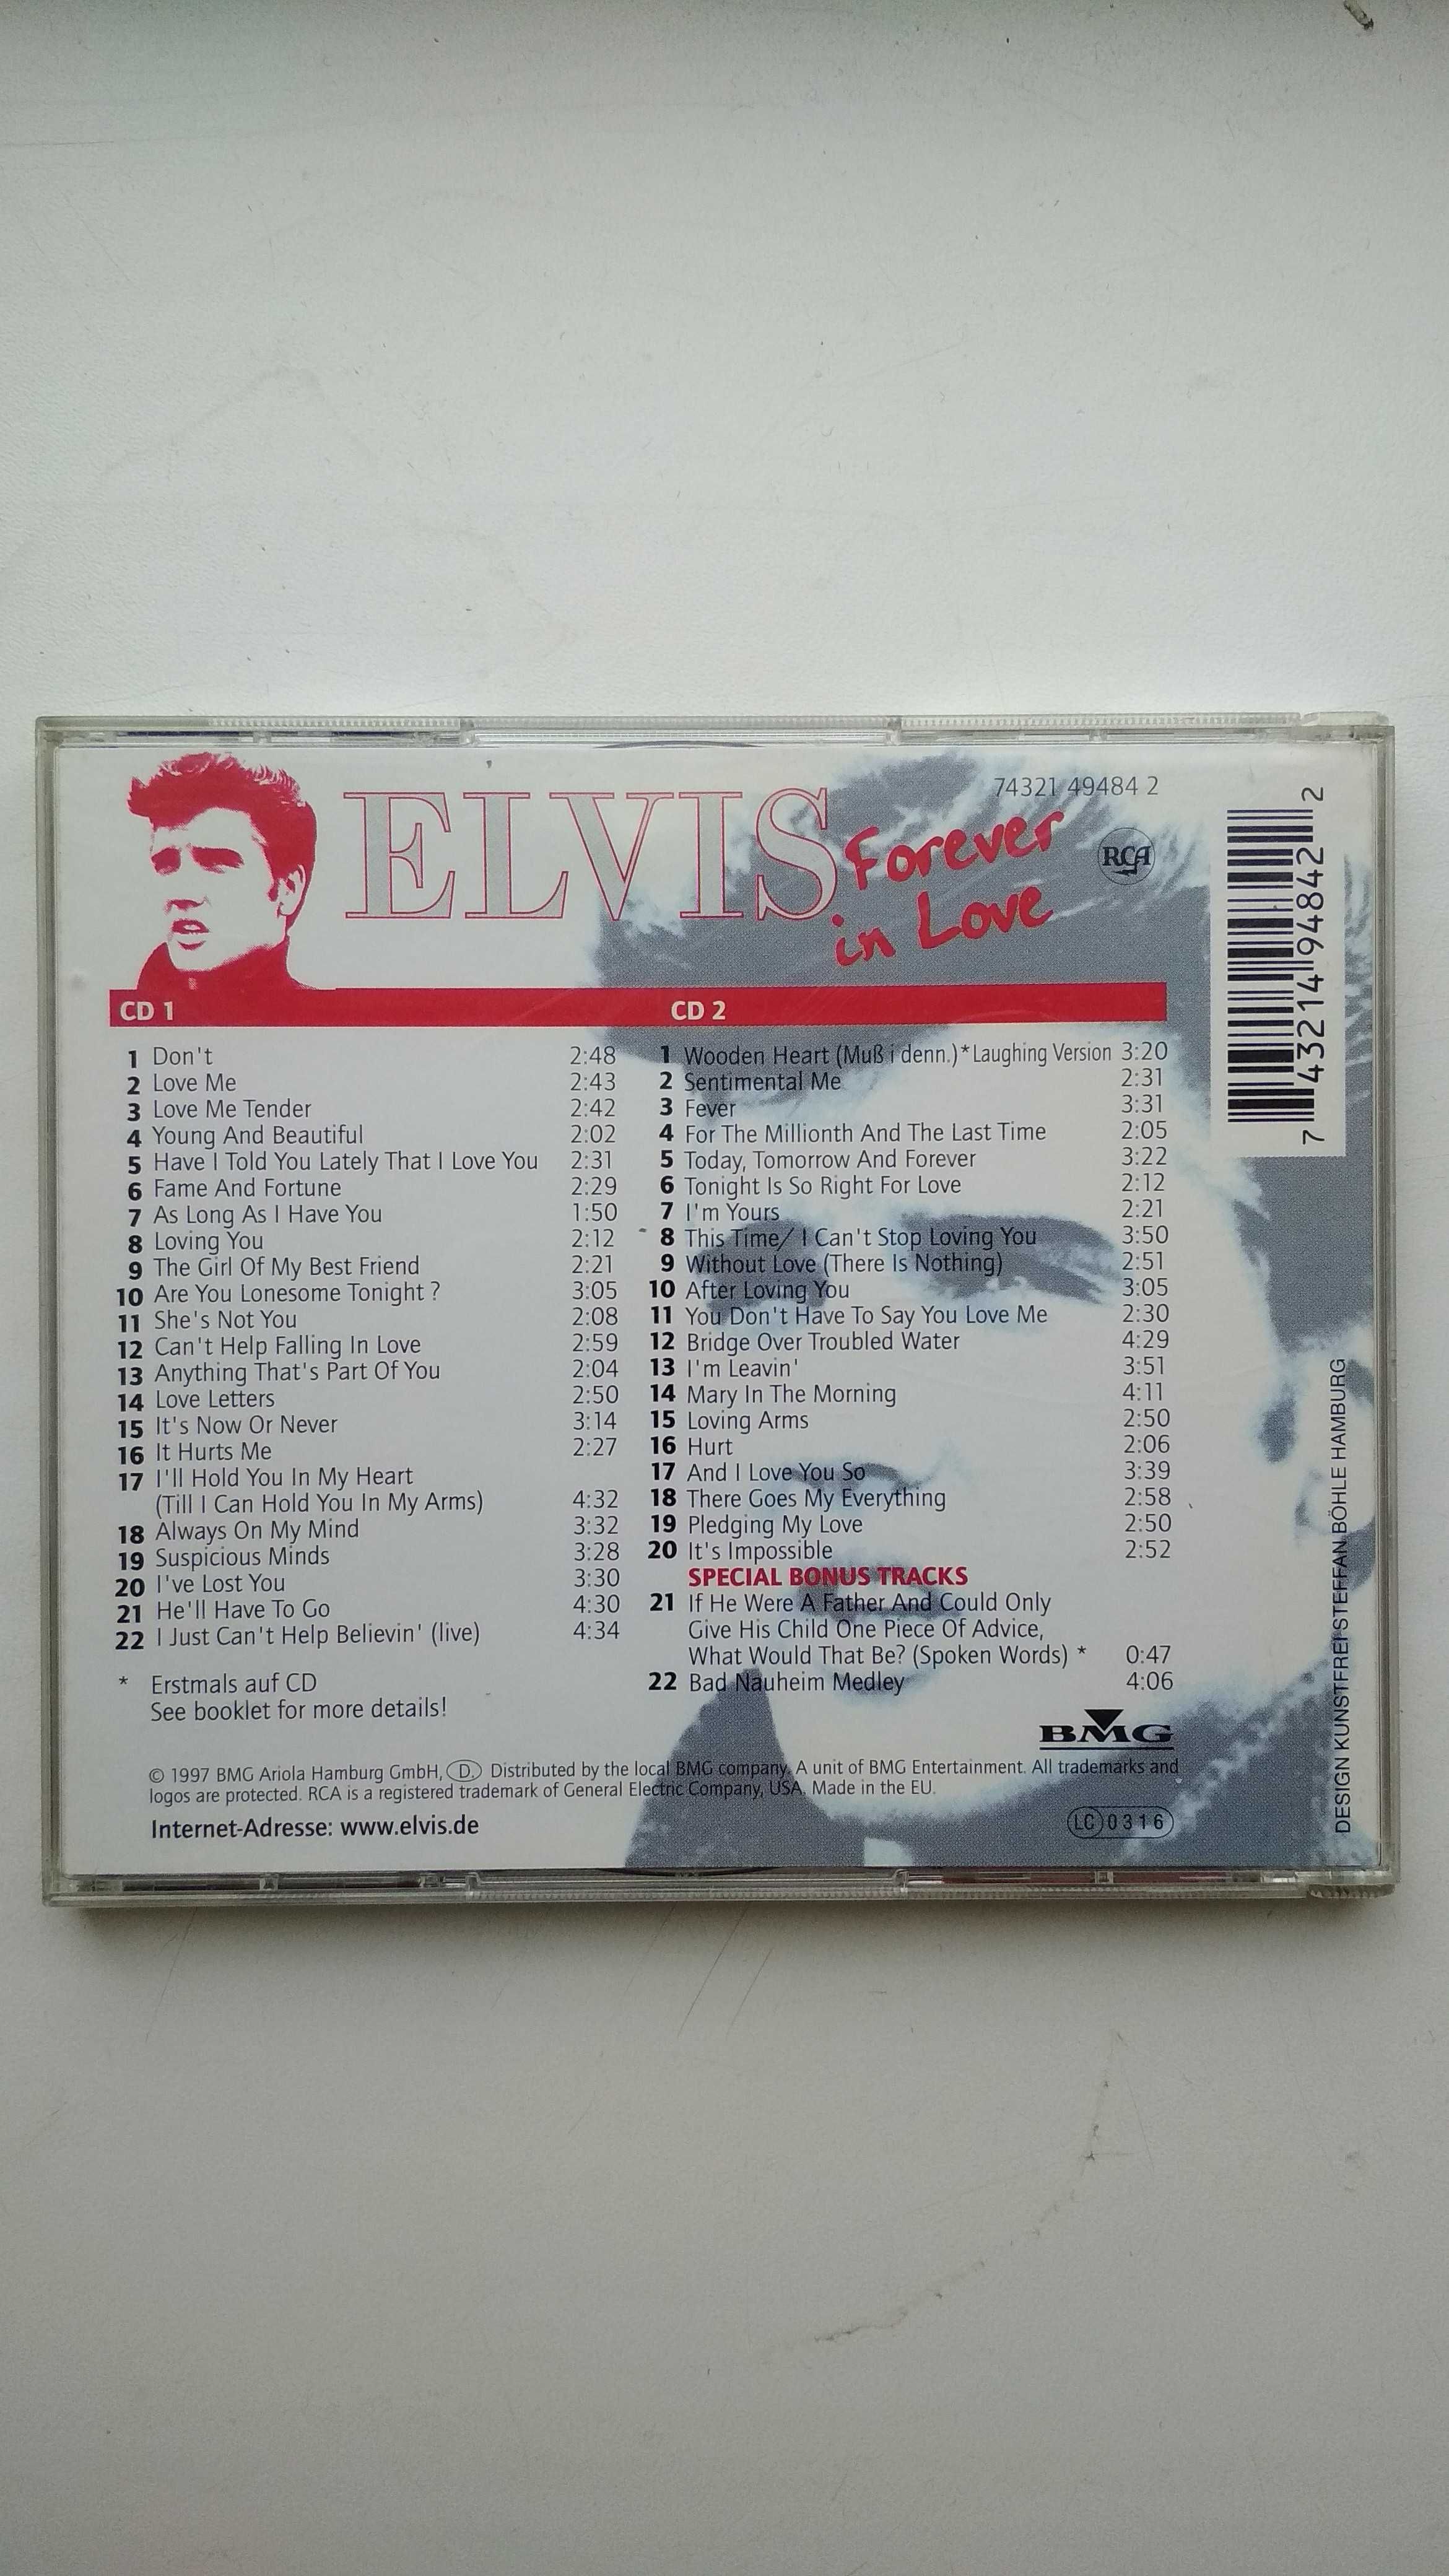 Elvis Presley Forever In Love 2CD 1997 BMG Ariola Hamburg GmbH German